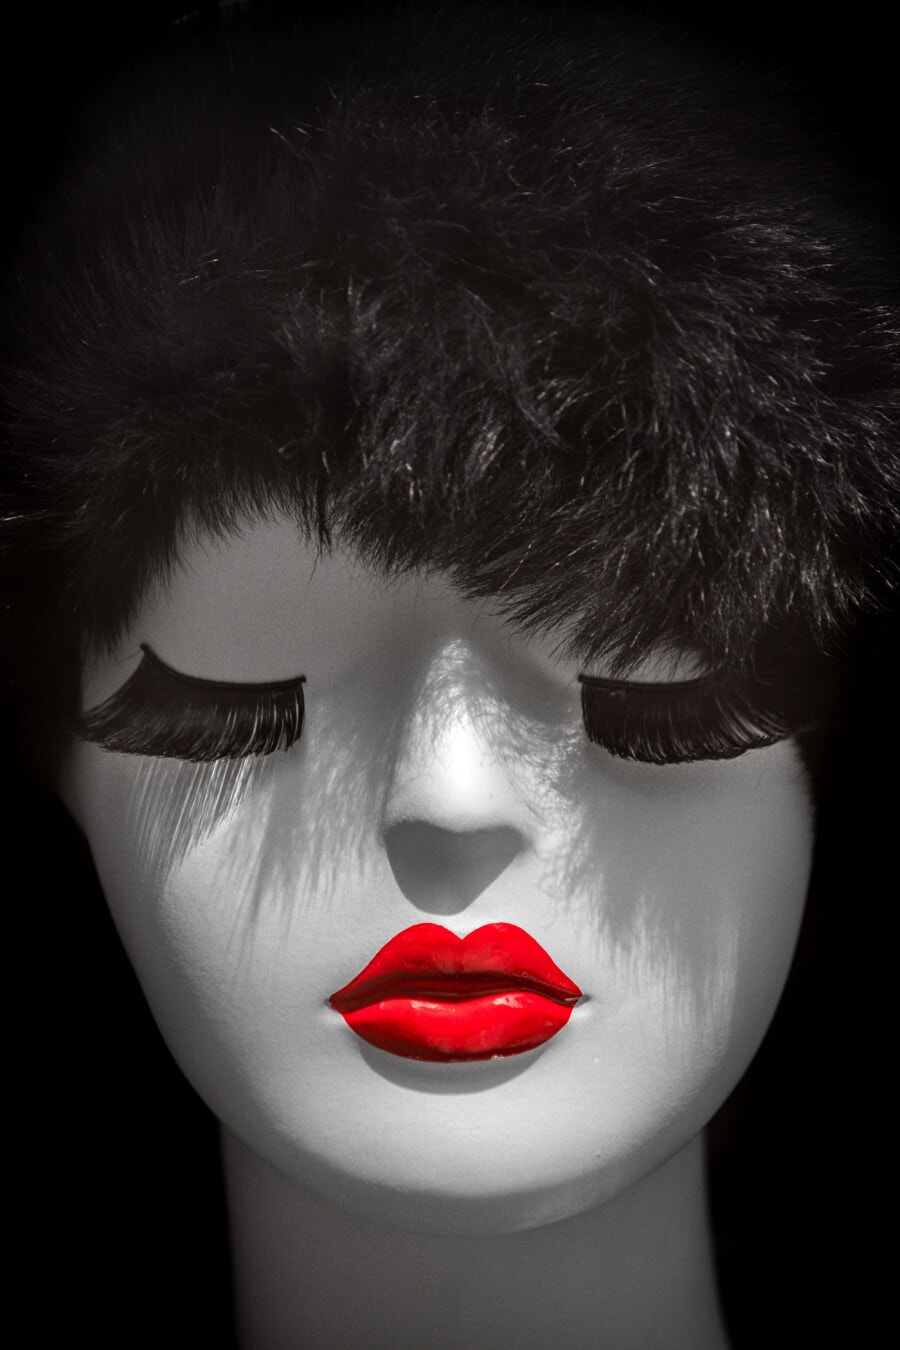 plastik, boneka, kepala, merapatkan, hitam dan putih, lipstik, merah tua, wajah, rambut, model